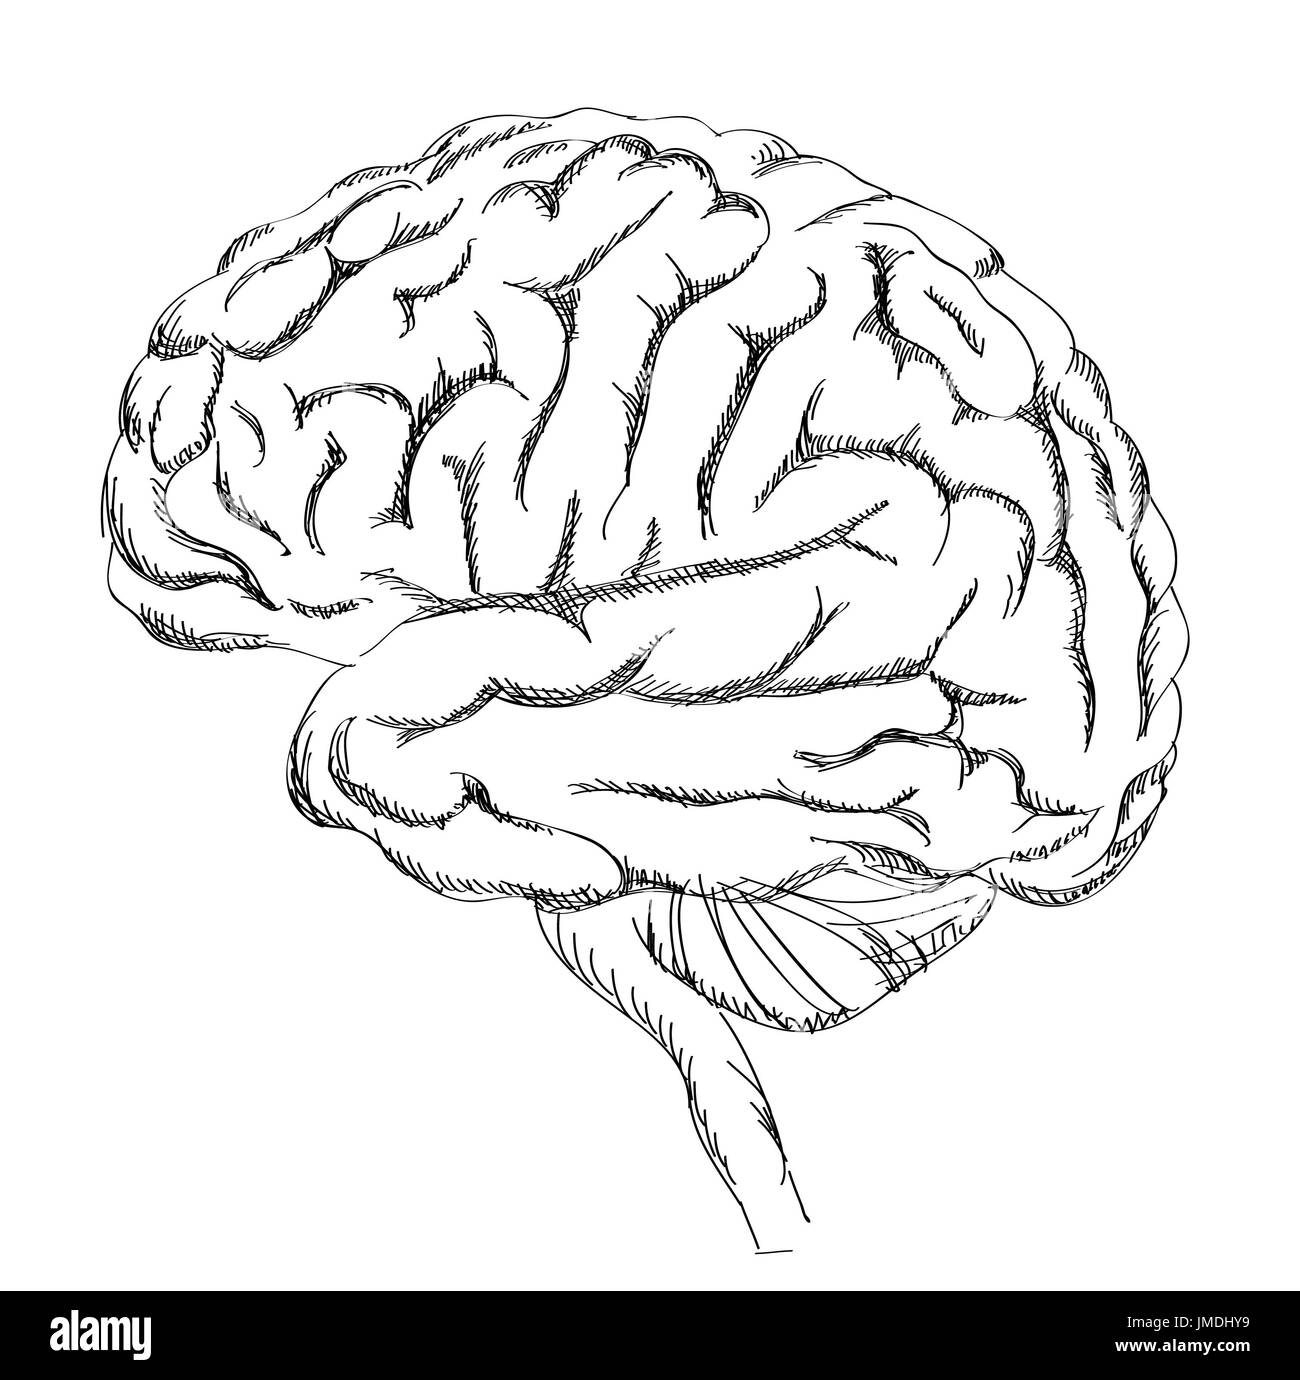 Anatomie du cerveau. Vue latérale du cerveau humain. Illustration d'esquisse isolée sur fond blanc. Banque D'Images